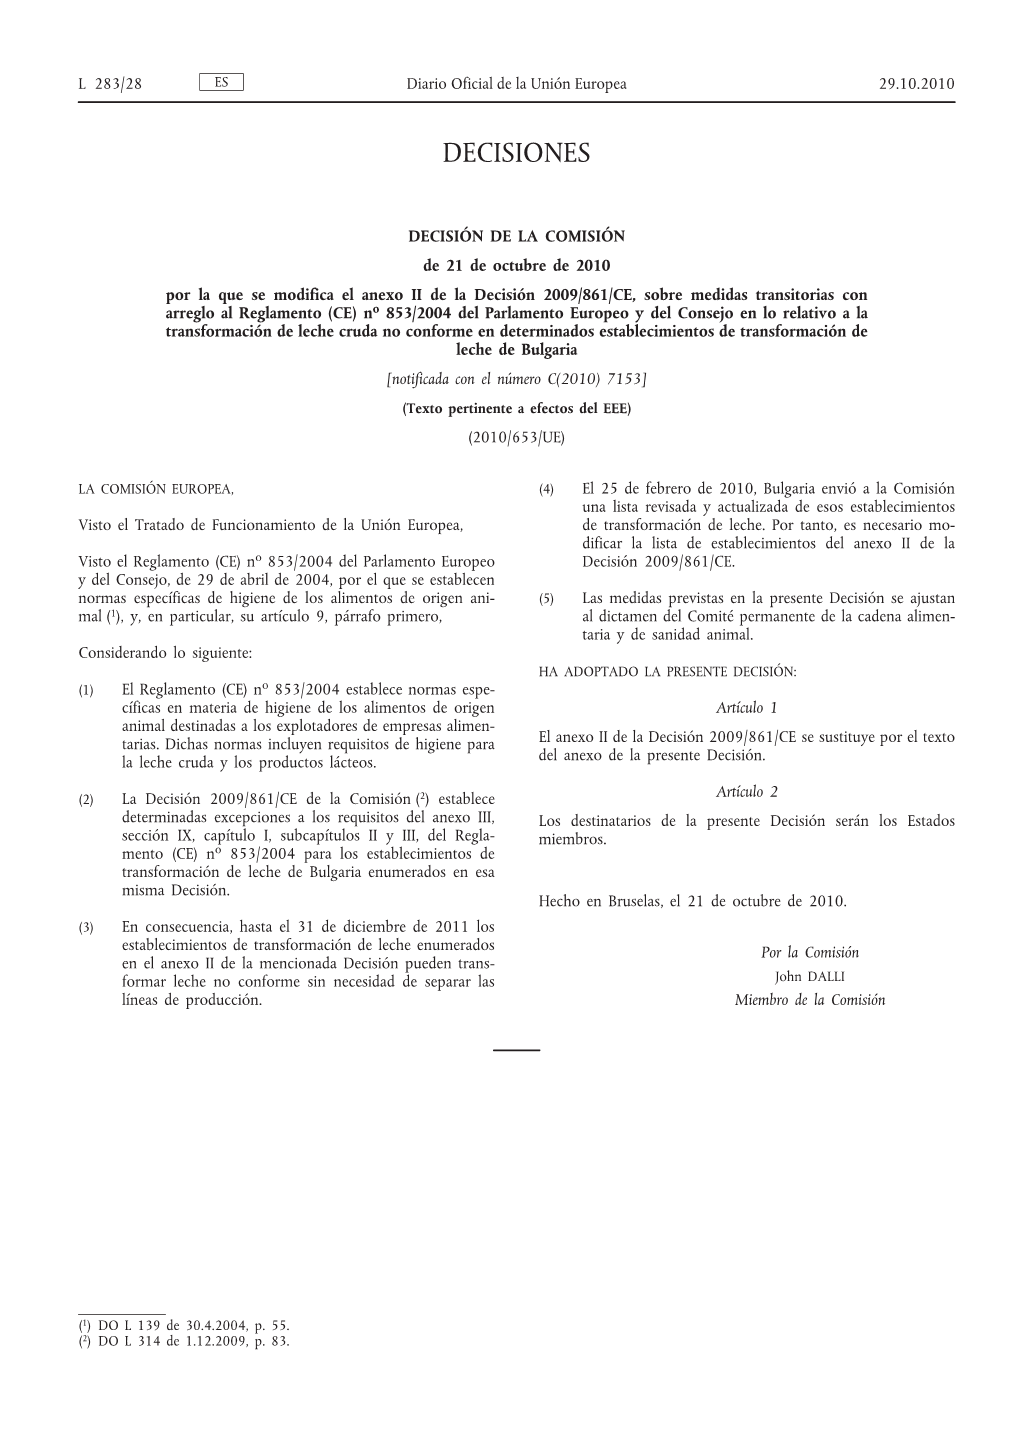 Decisión De La Comisión, De 21 De Octubre De 2010, Por La